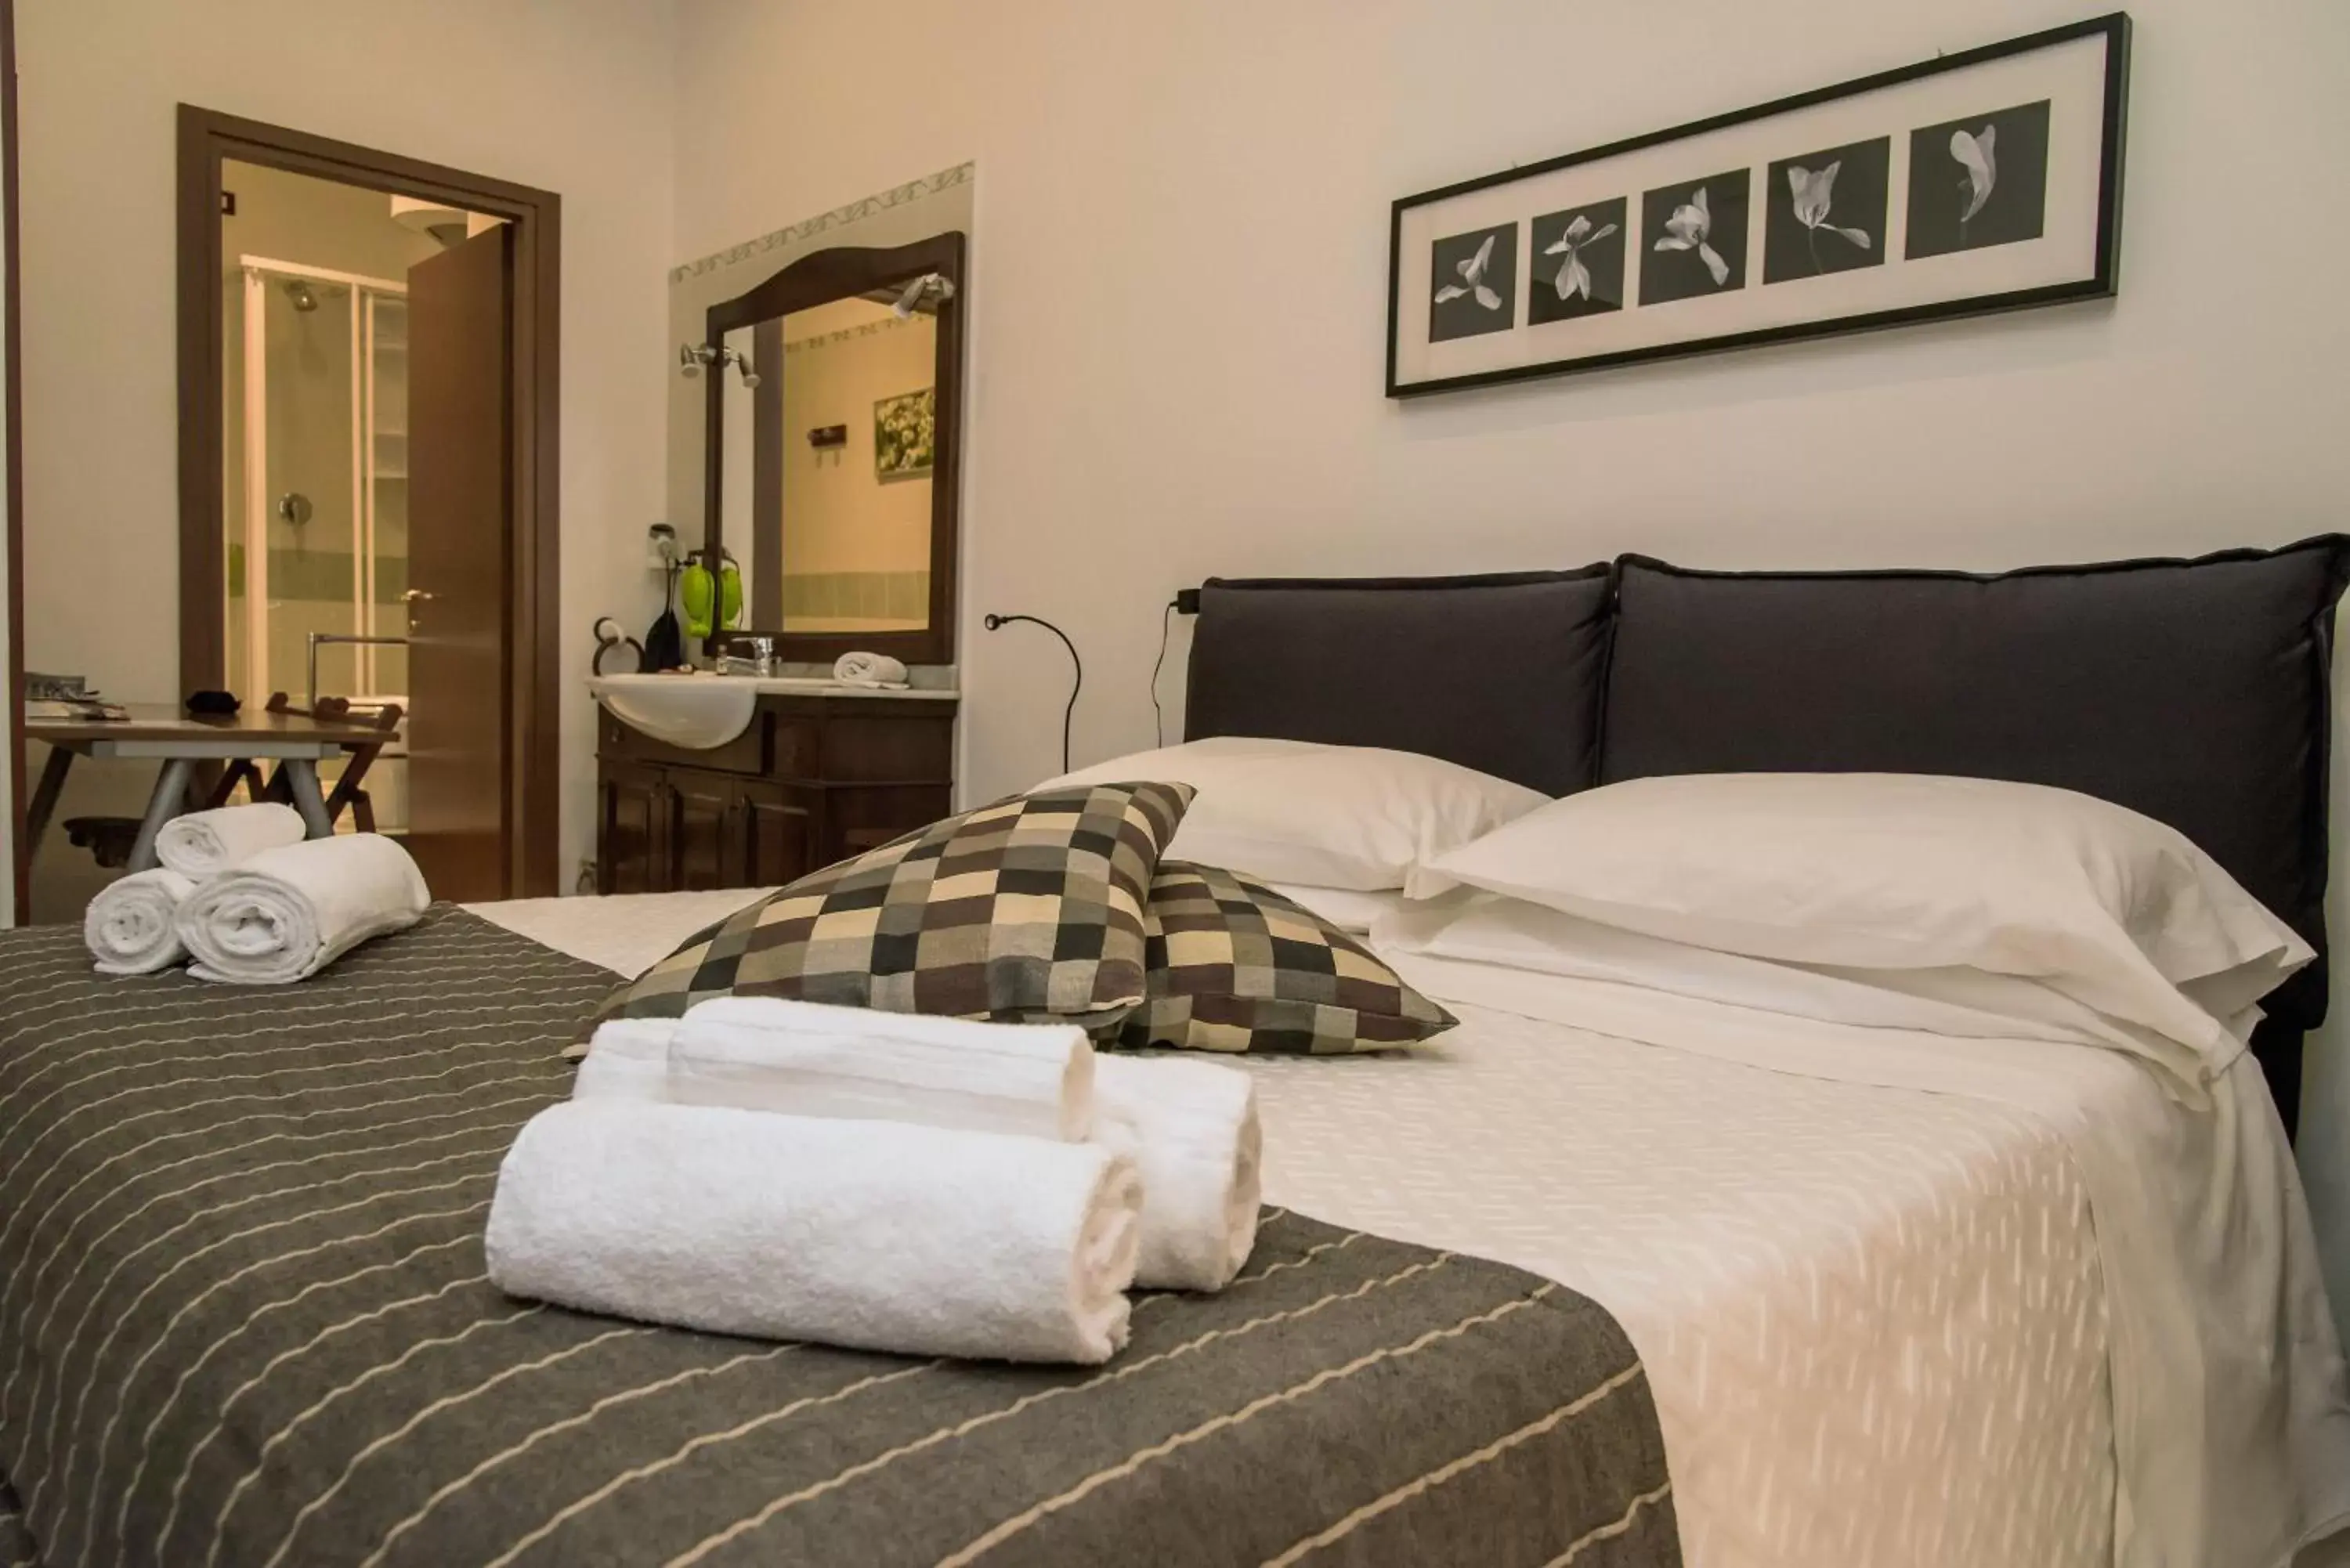 Bedroom, Room Photo in Bed & Breakfast Plebiscito Home